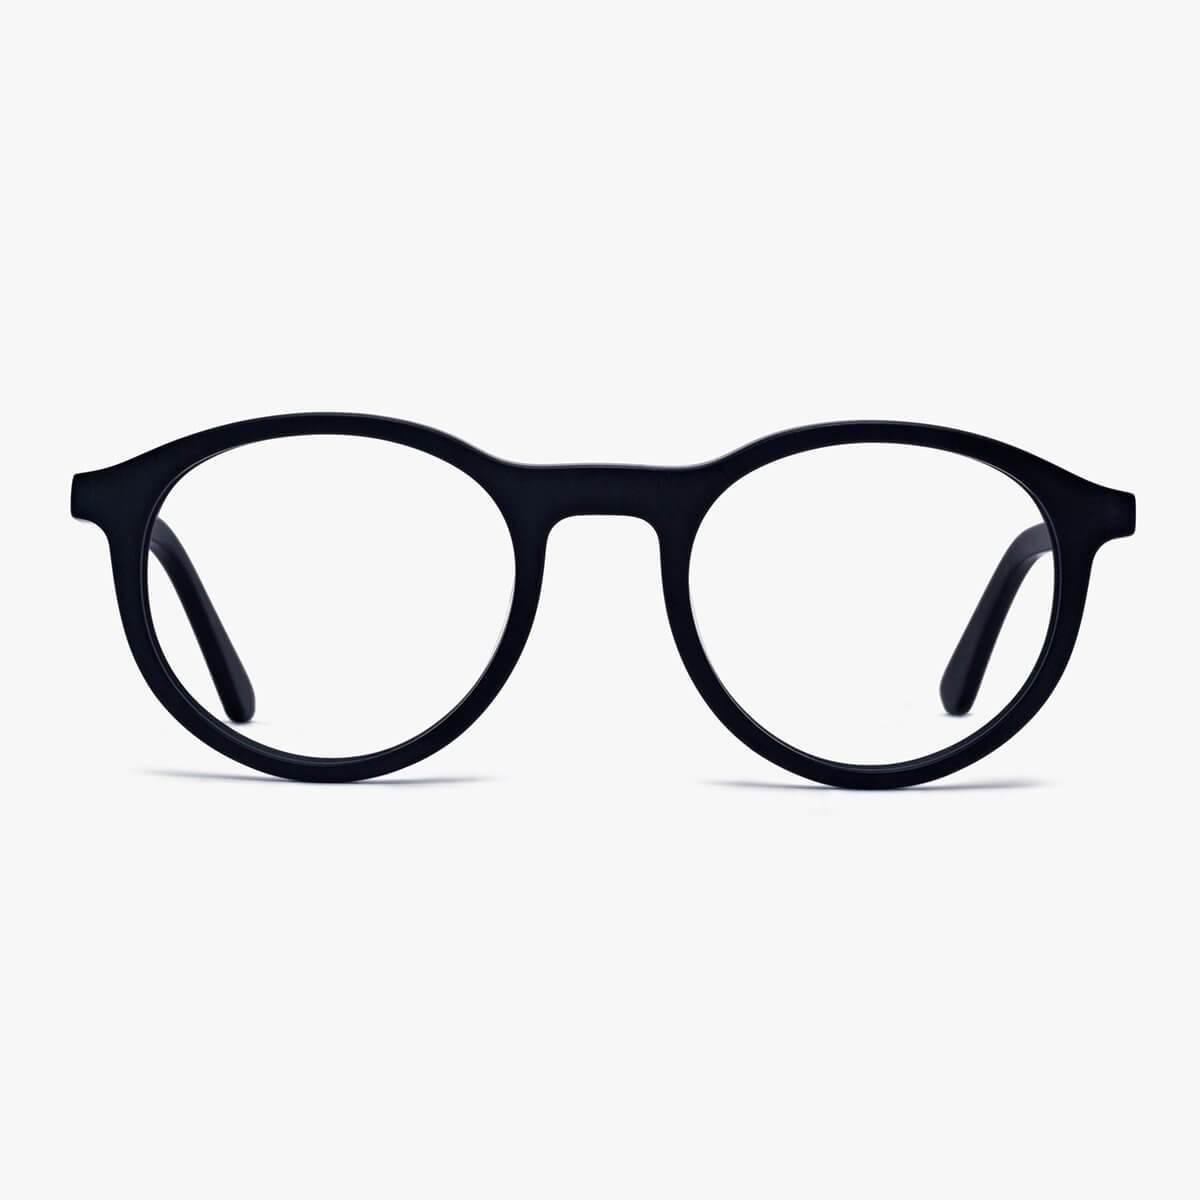 Luxreaders, Was sind Blaufilter und Computer Brillen?